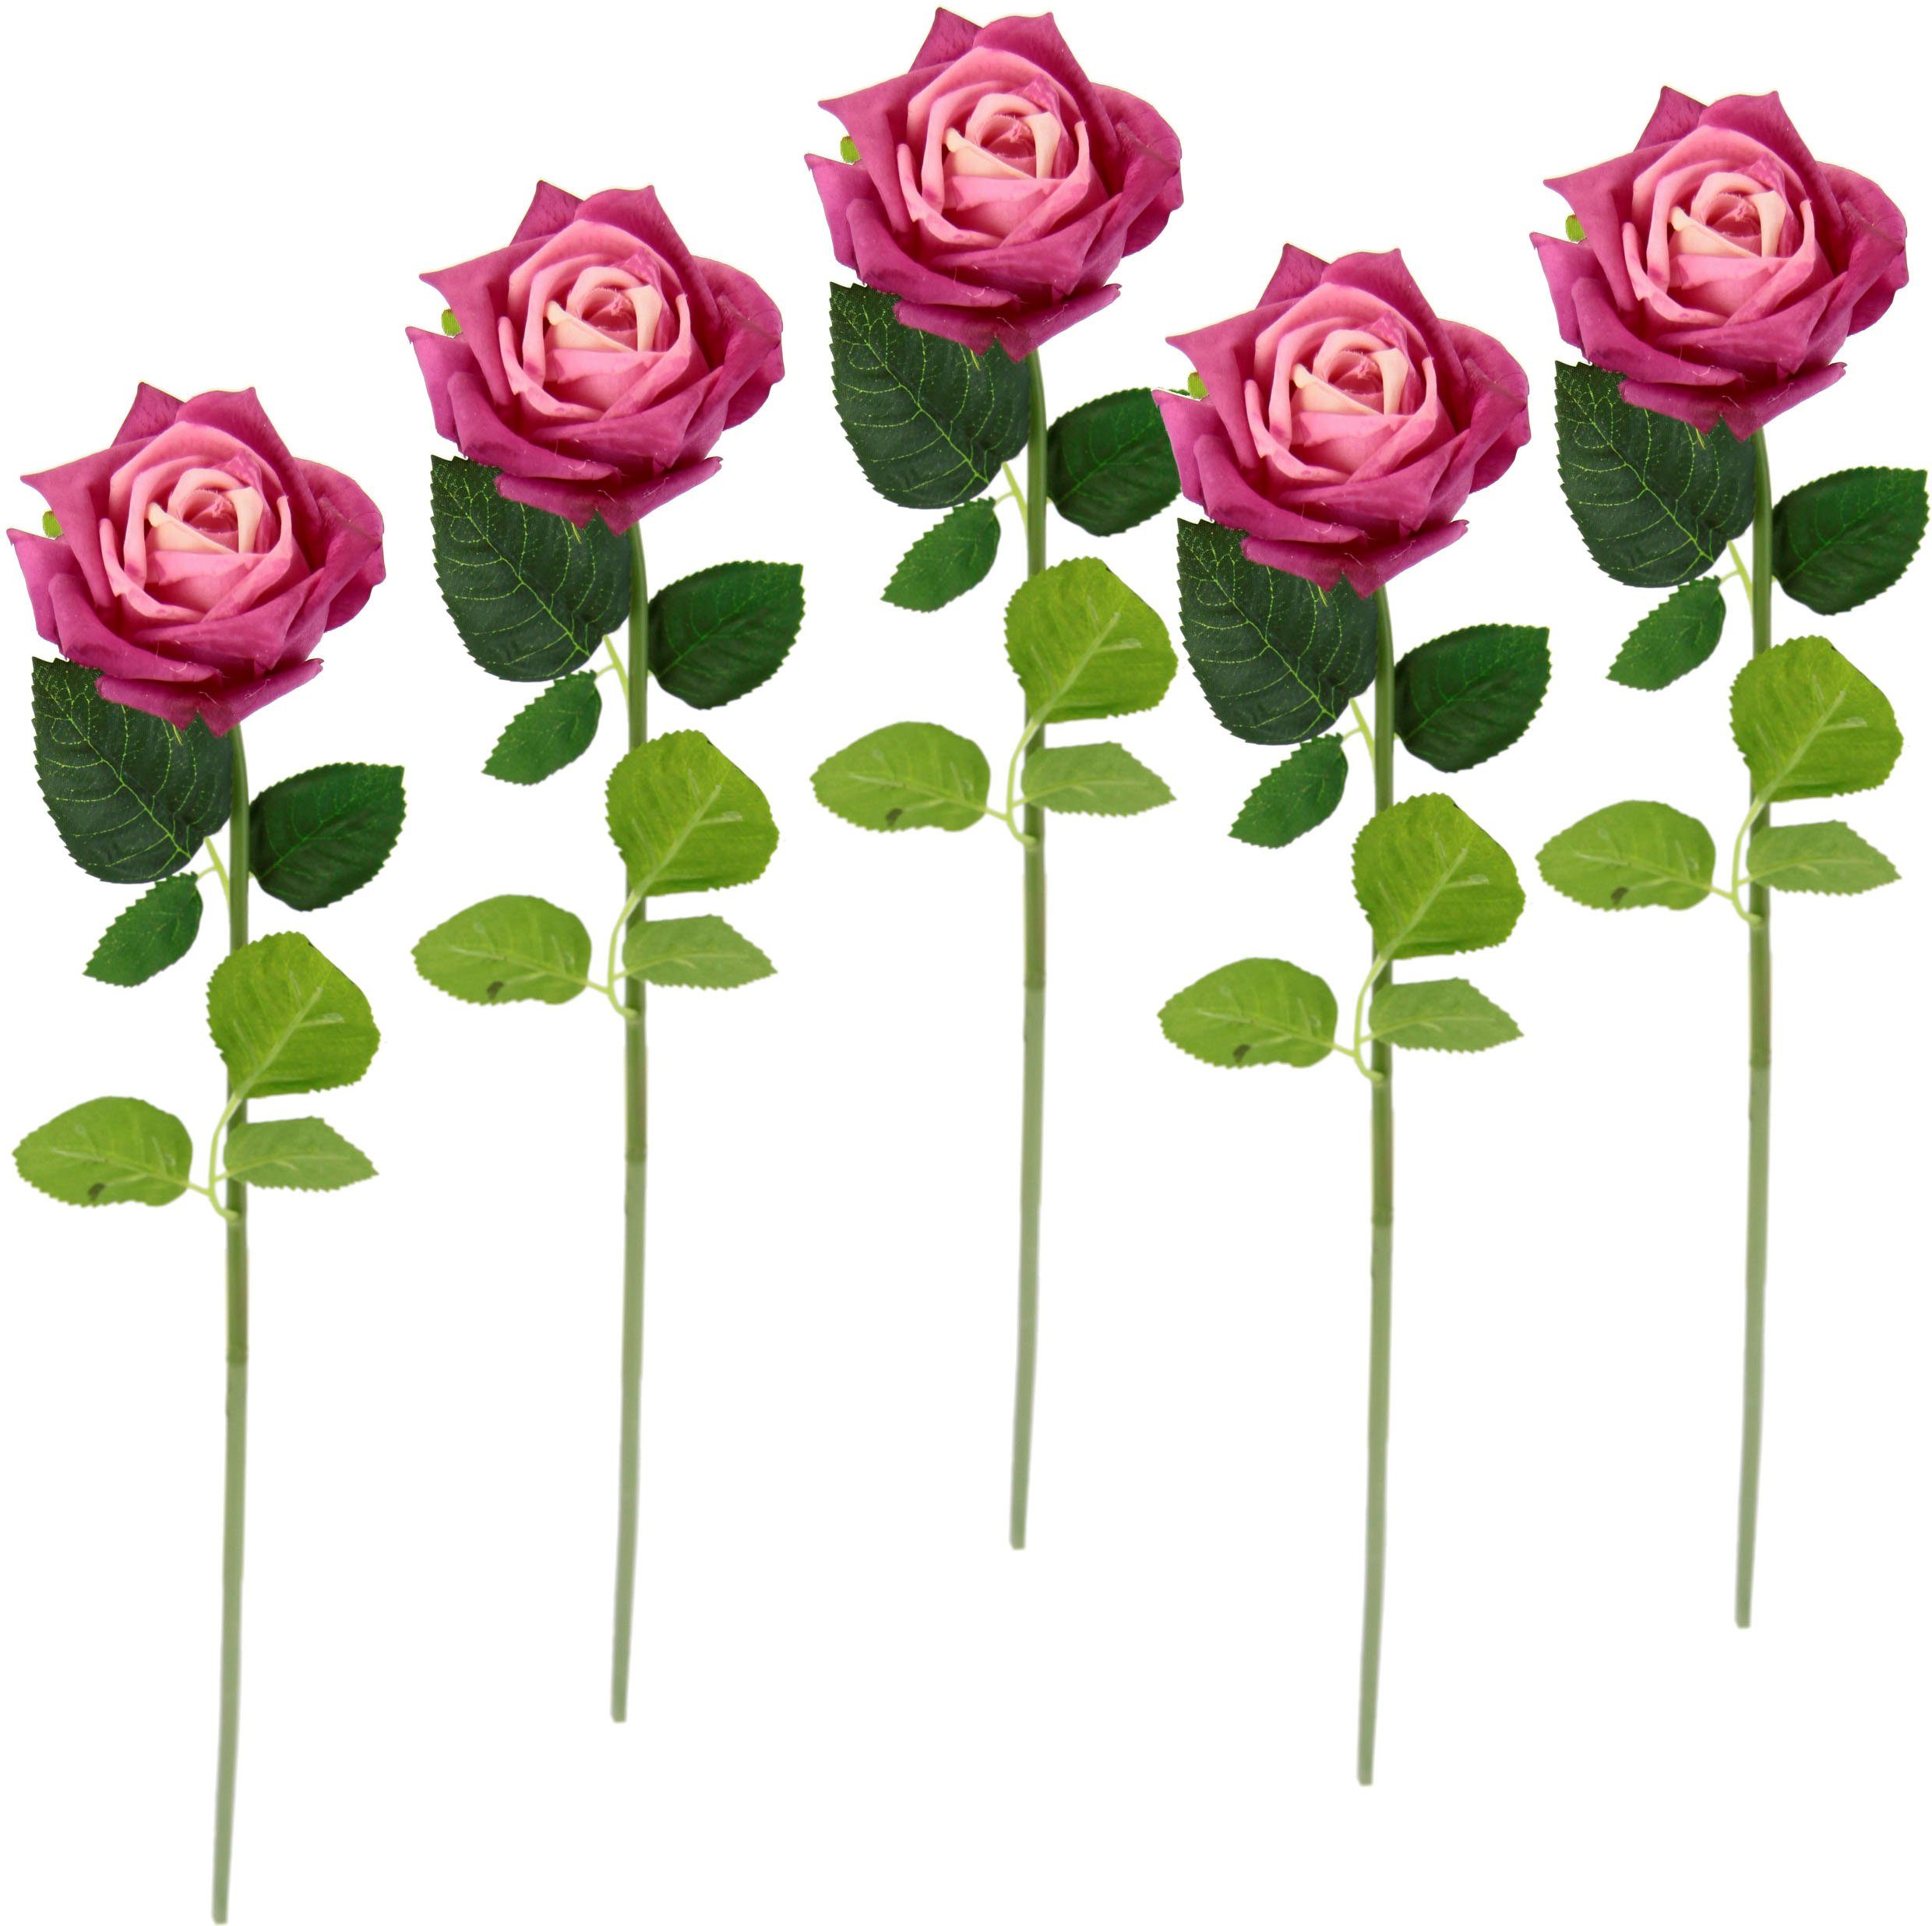 Günstig und beliebt Kunstblume Rose, I.GE.A., Höhe 45 5er künstliche Seidenrosen, Bouquet, Kunstrose Kunstzweig, Set pink Rosen, cm